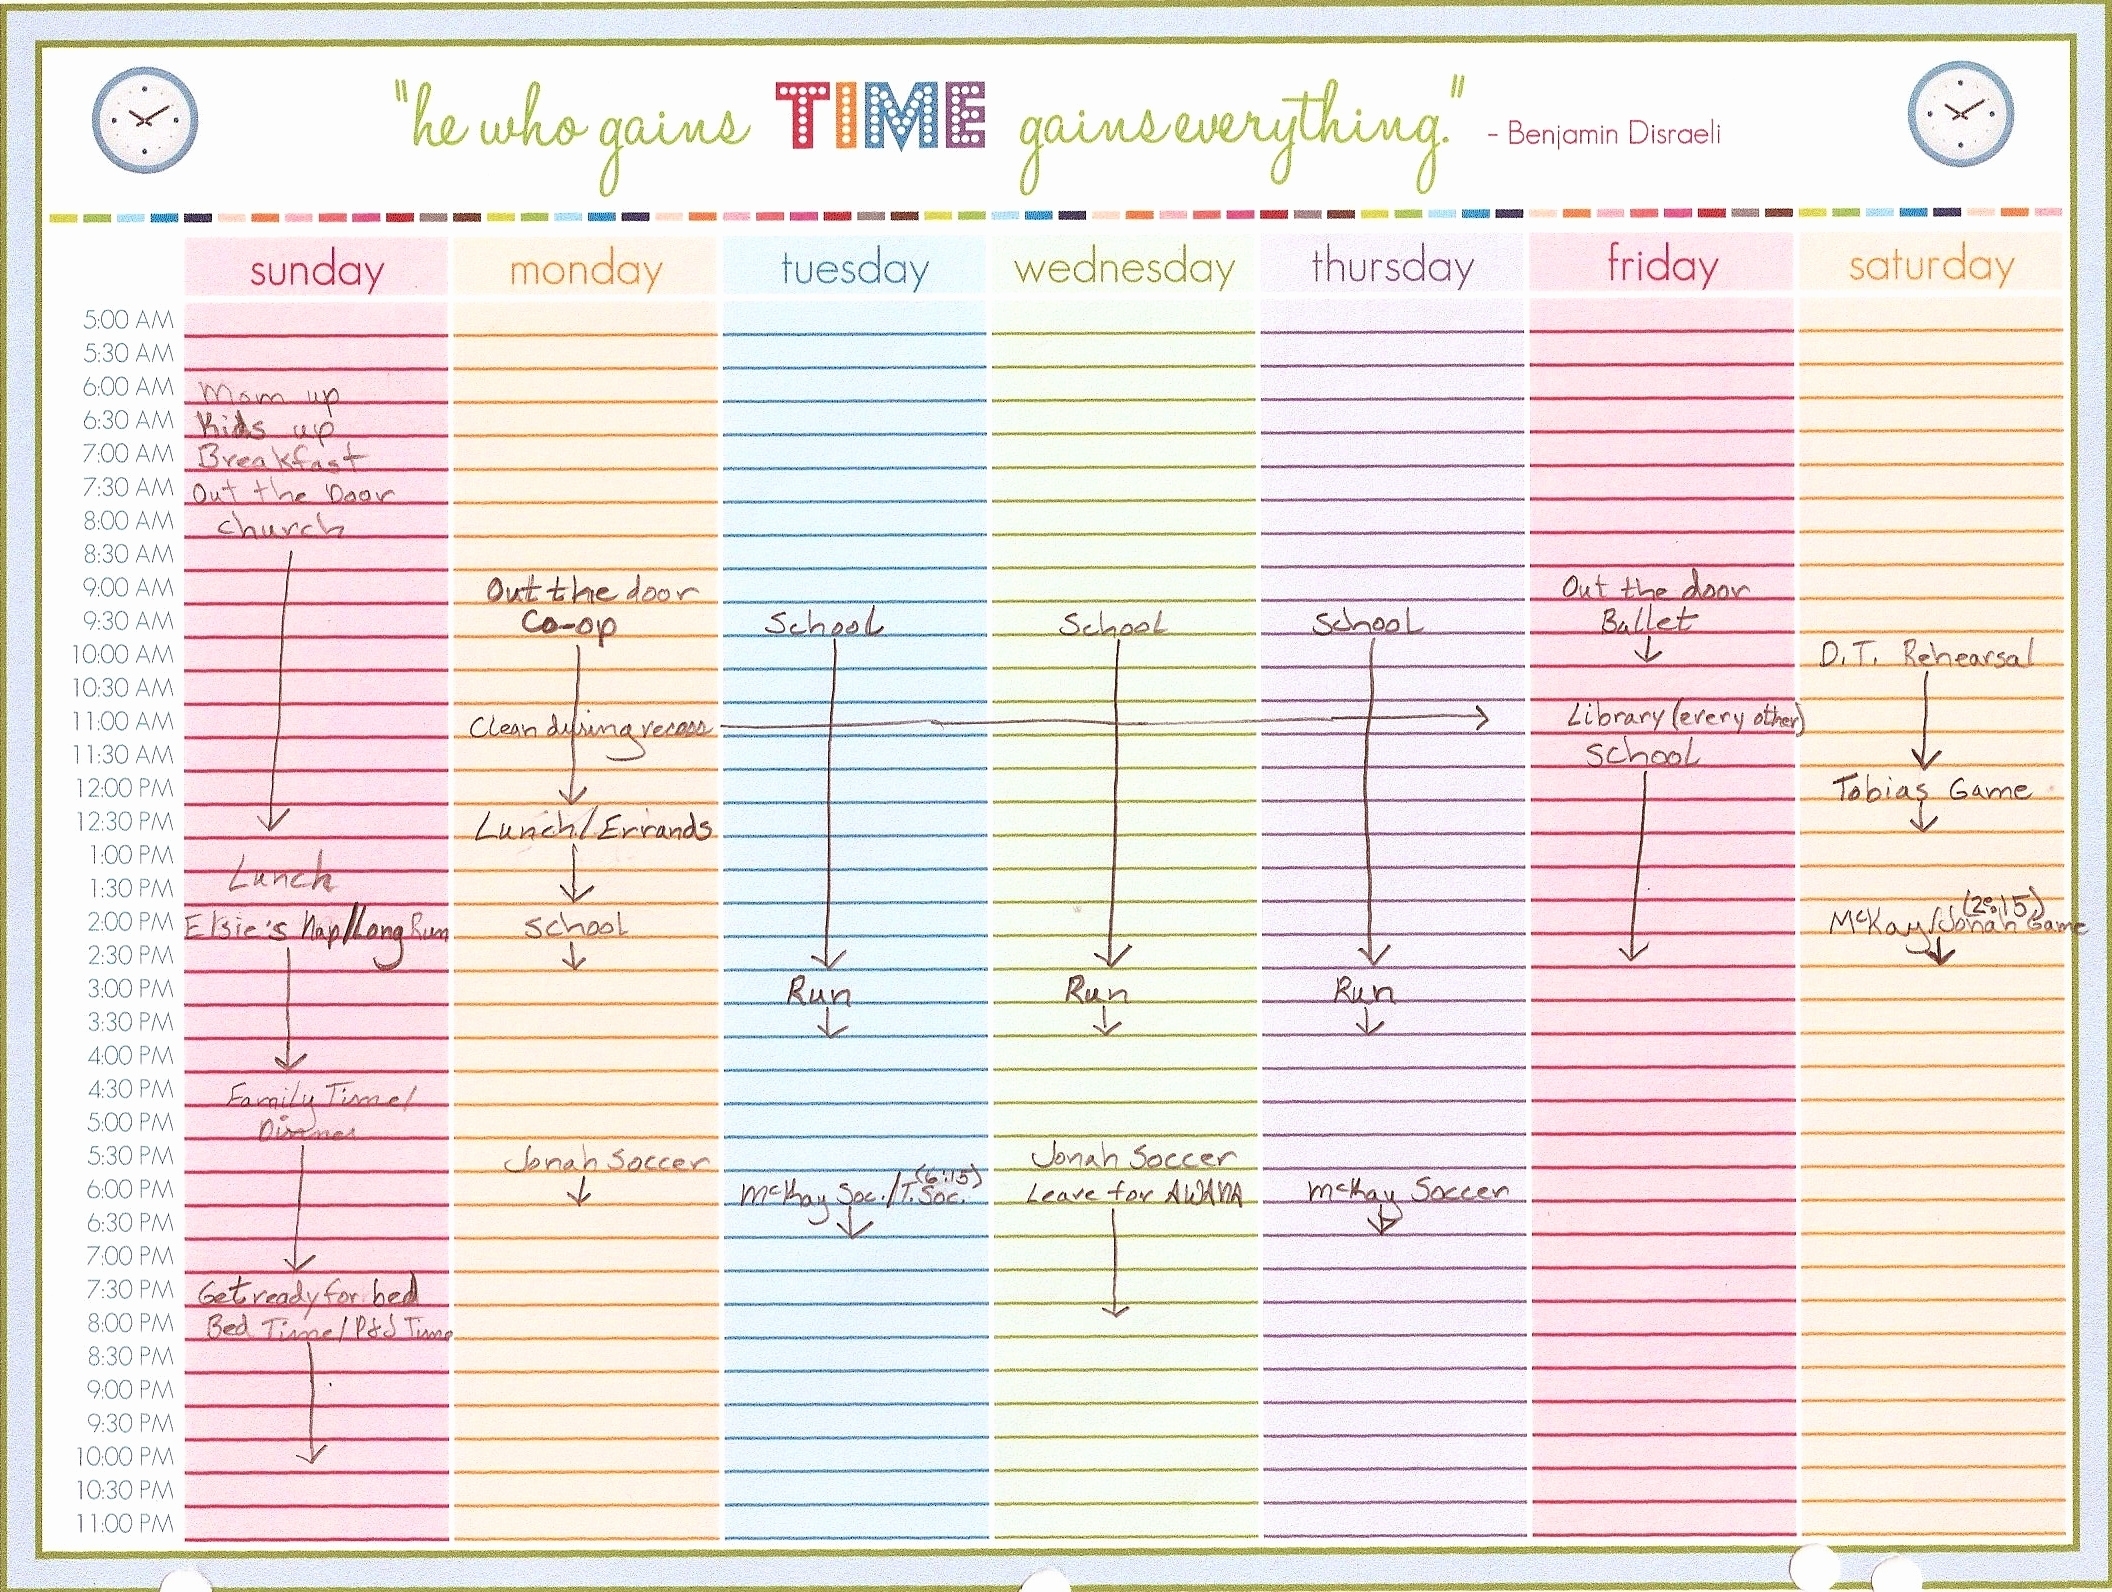 Free Printable Weekly Calendar Weekly Calendar With Time Slots within Weekly Calendar With Time Slots